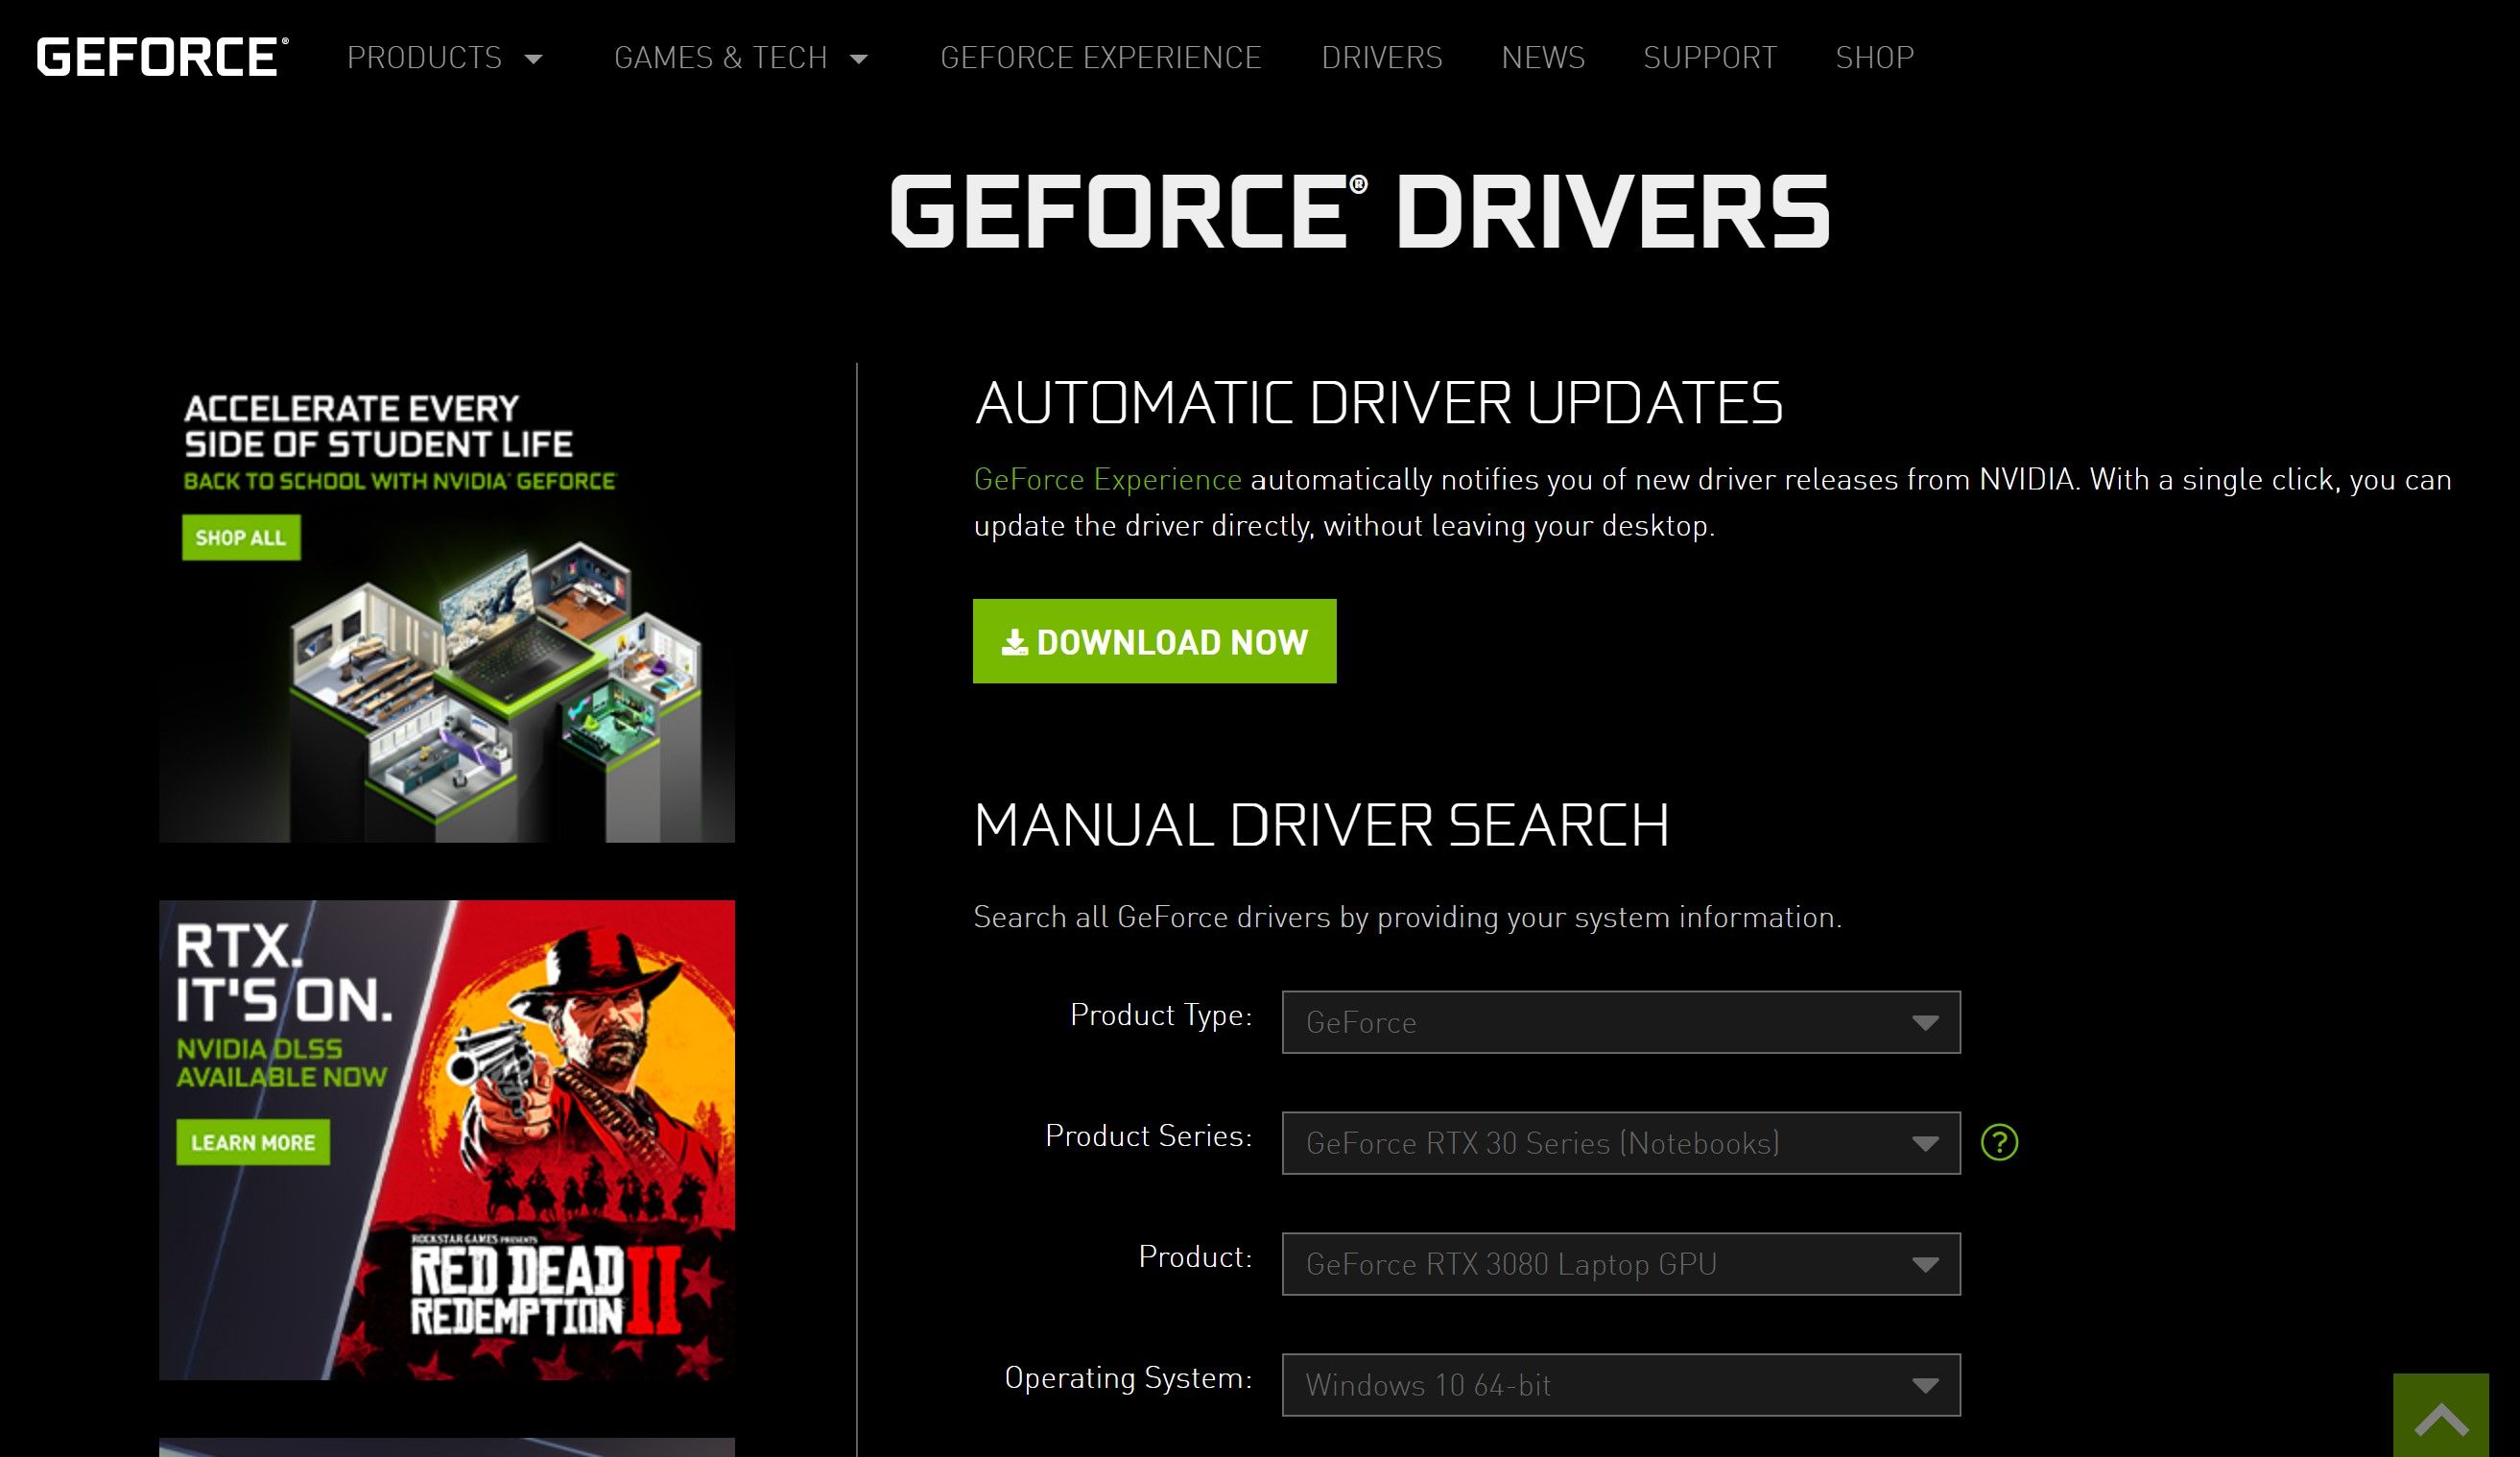 GeForce website interface